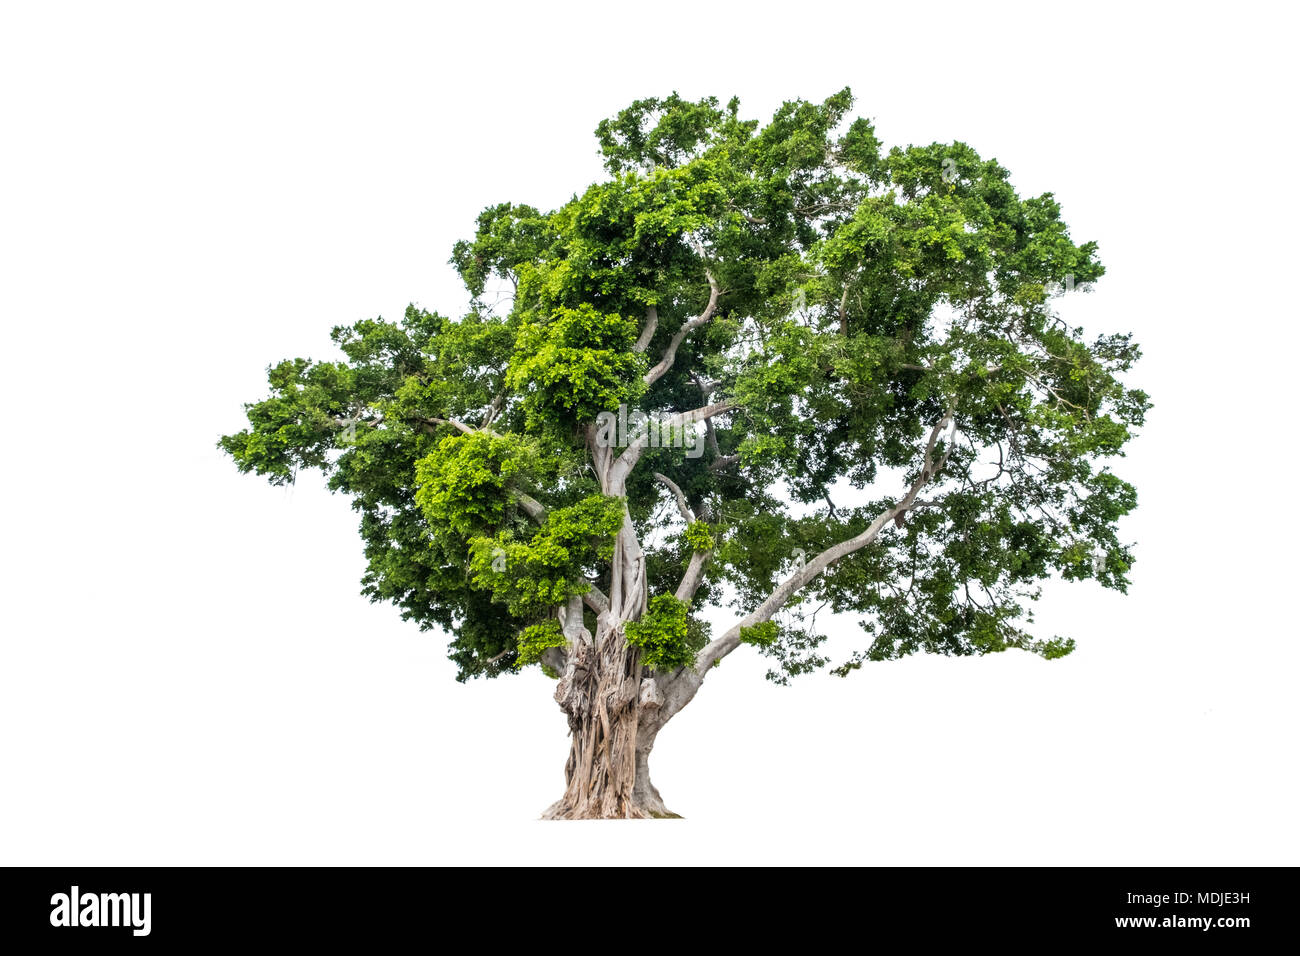 tree isolated on white background Stock Photo